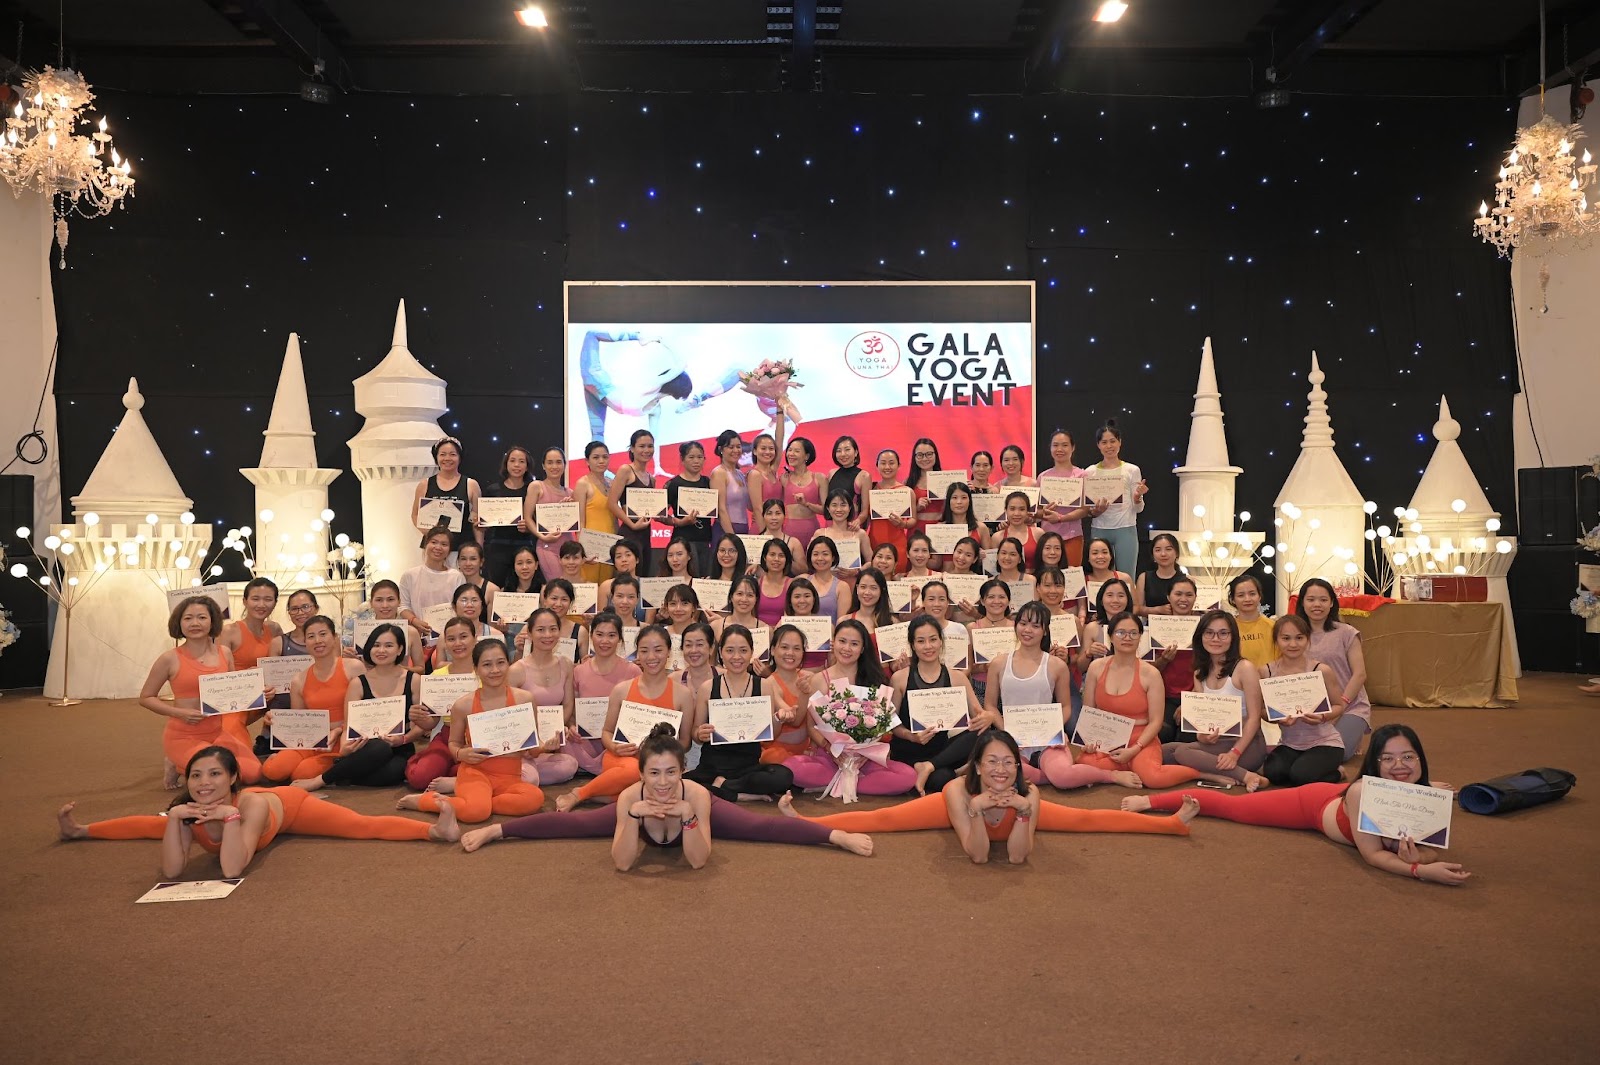 Trải nghiệm nghề HLV Yoga tại Yoga Luna Thái - 1 nghề cực hot hiện nay cho giới trẻ - Ảnh 8.